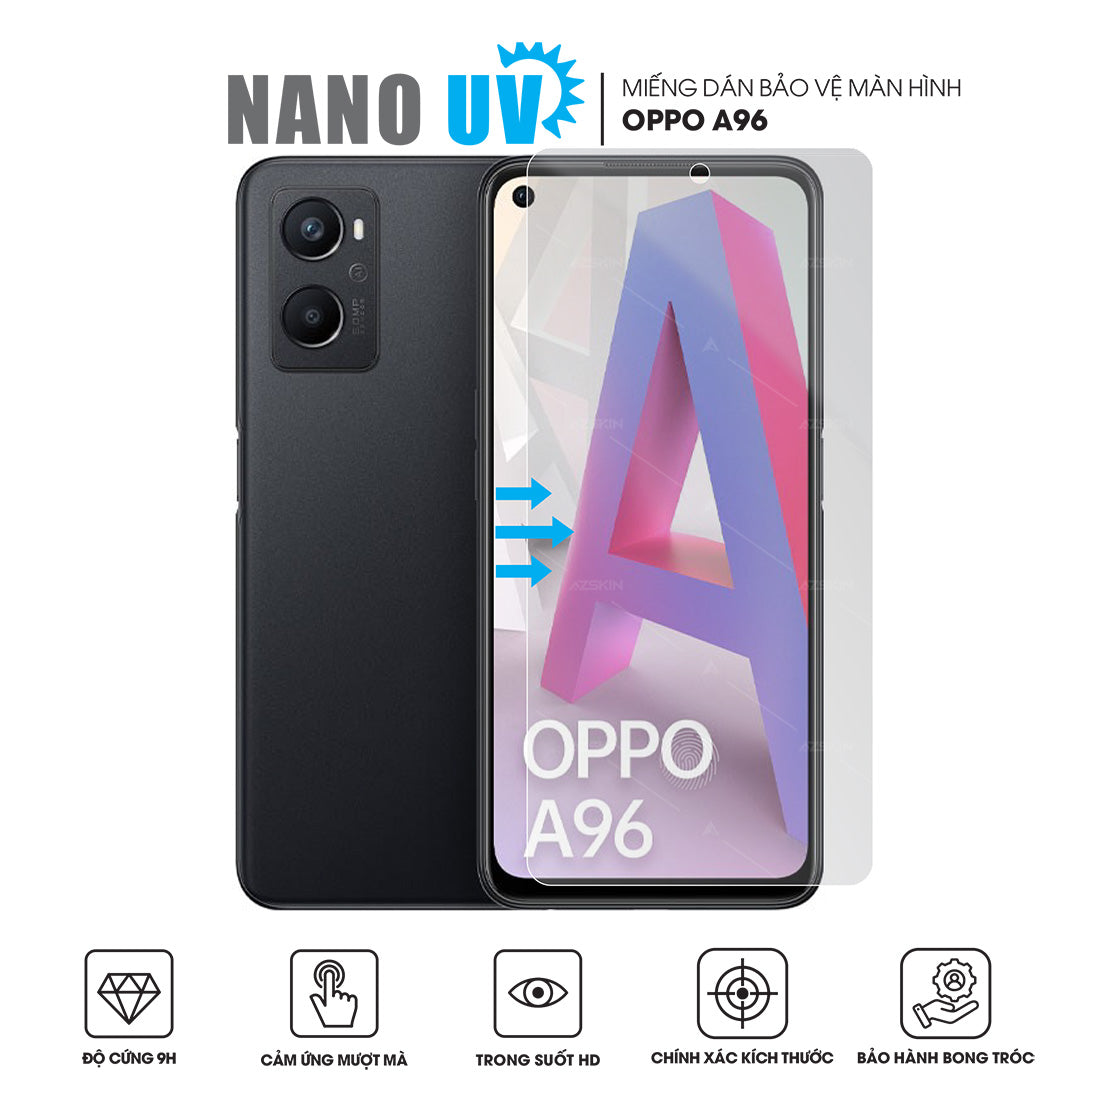 Miếng dán Nano UV cho màn hình OPPO A96